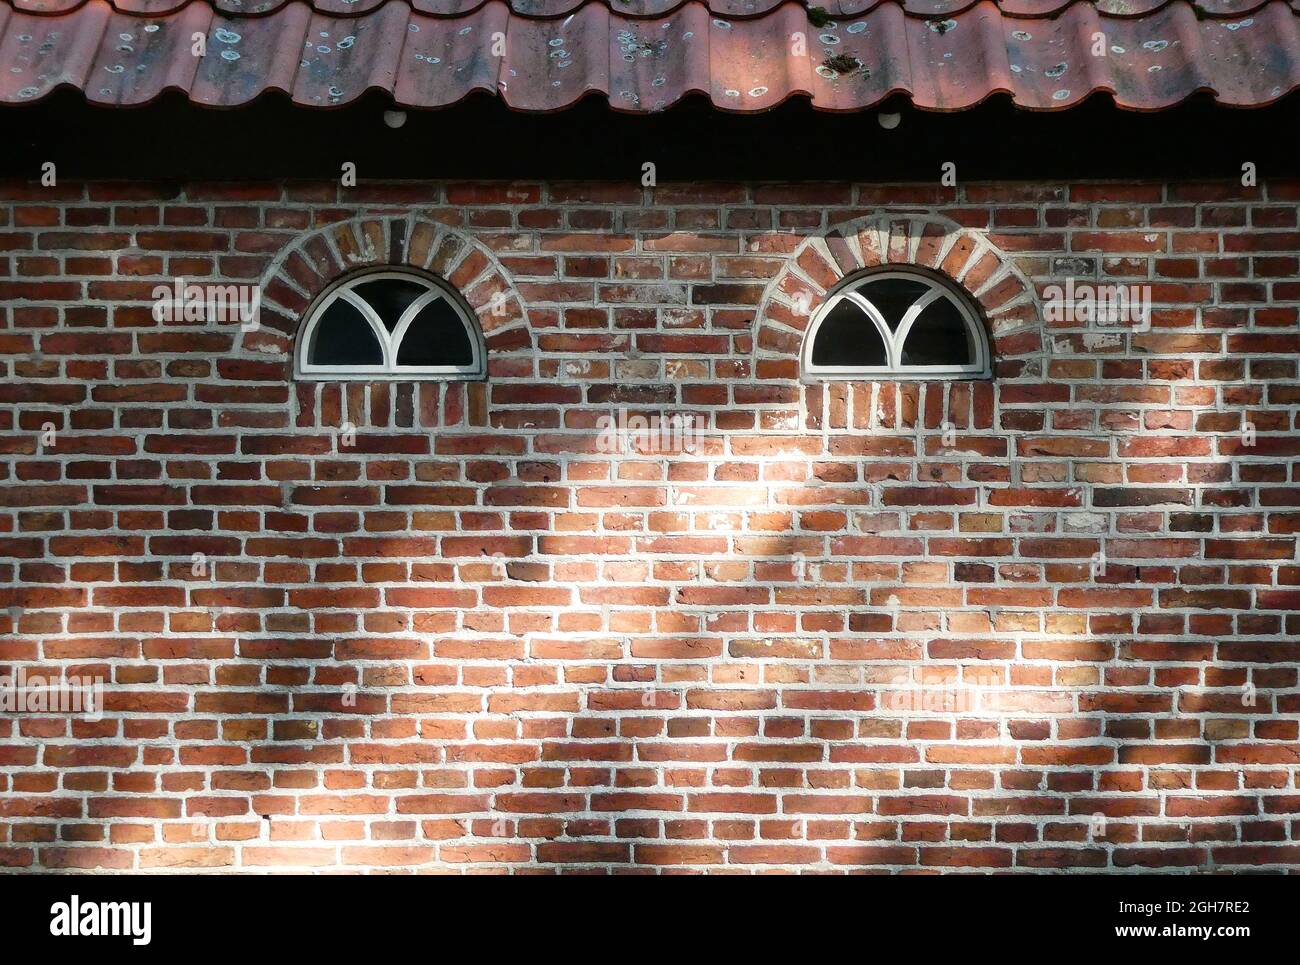 Eine alte gemauerte Wand mit zwei Bogenfenstern und einem Ziegeldach. Gesehen in den Niederlanden Stockfoto